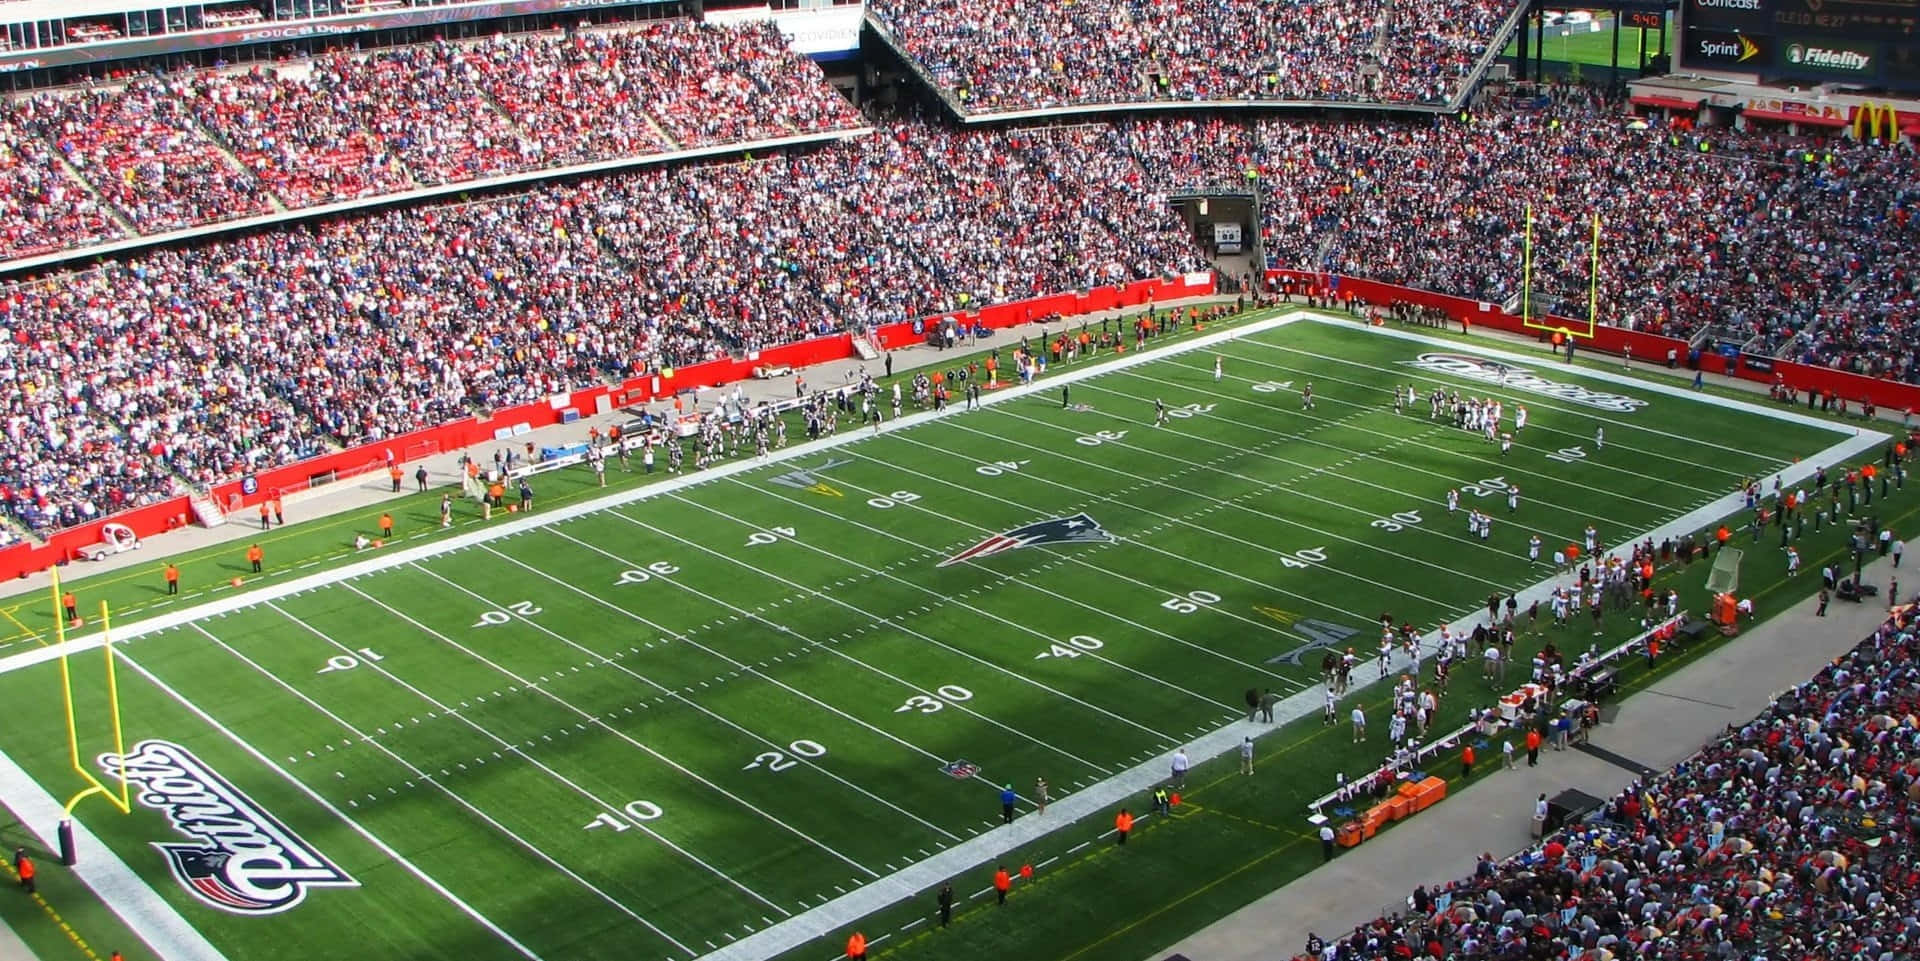 Large Crowd Fills U.S. Football Stadium